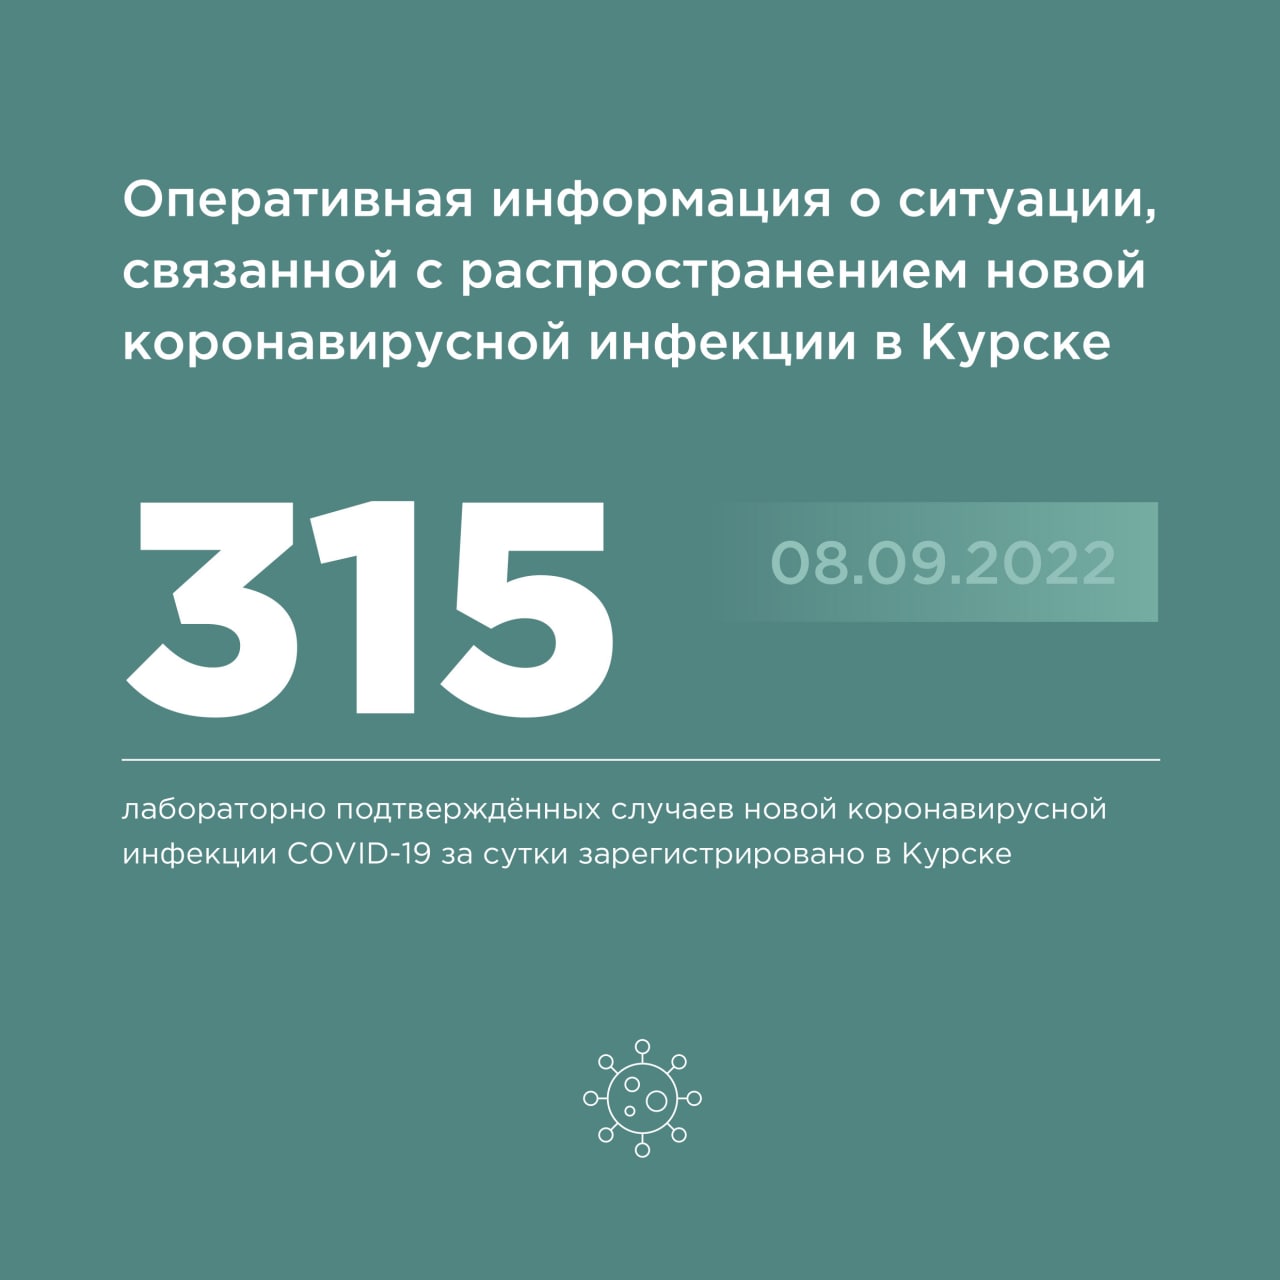 8 сентября коронавирус подтвердили у 315 жителей Курска